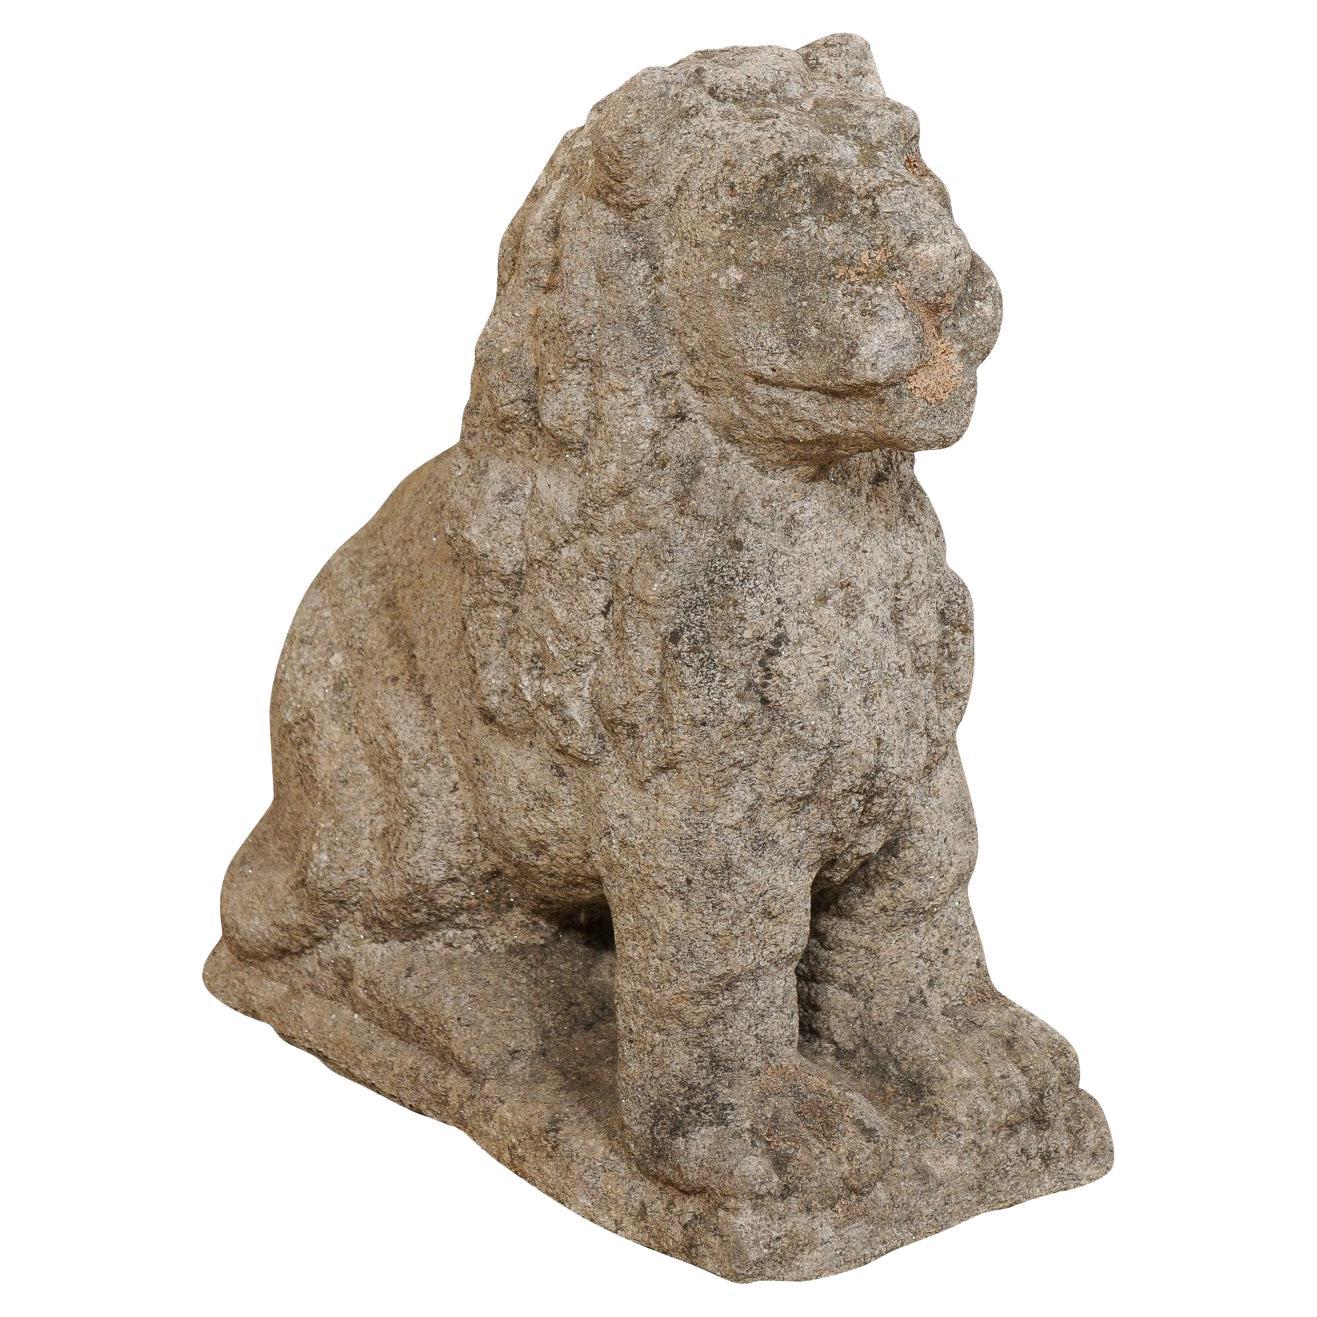 Statue de jardin du lion en pierre du XVIIIe siècle, sculptée à la main, originaire d'Europe